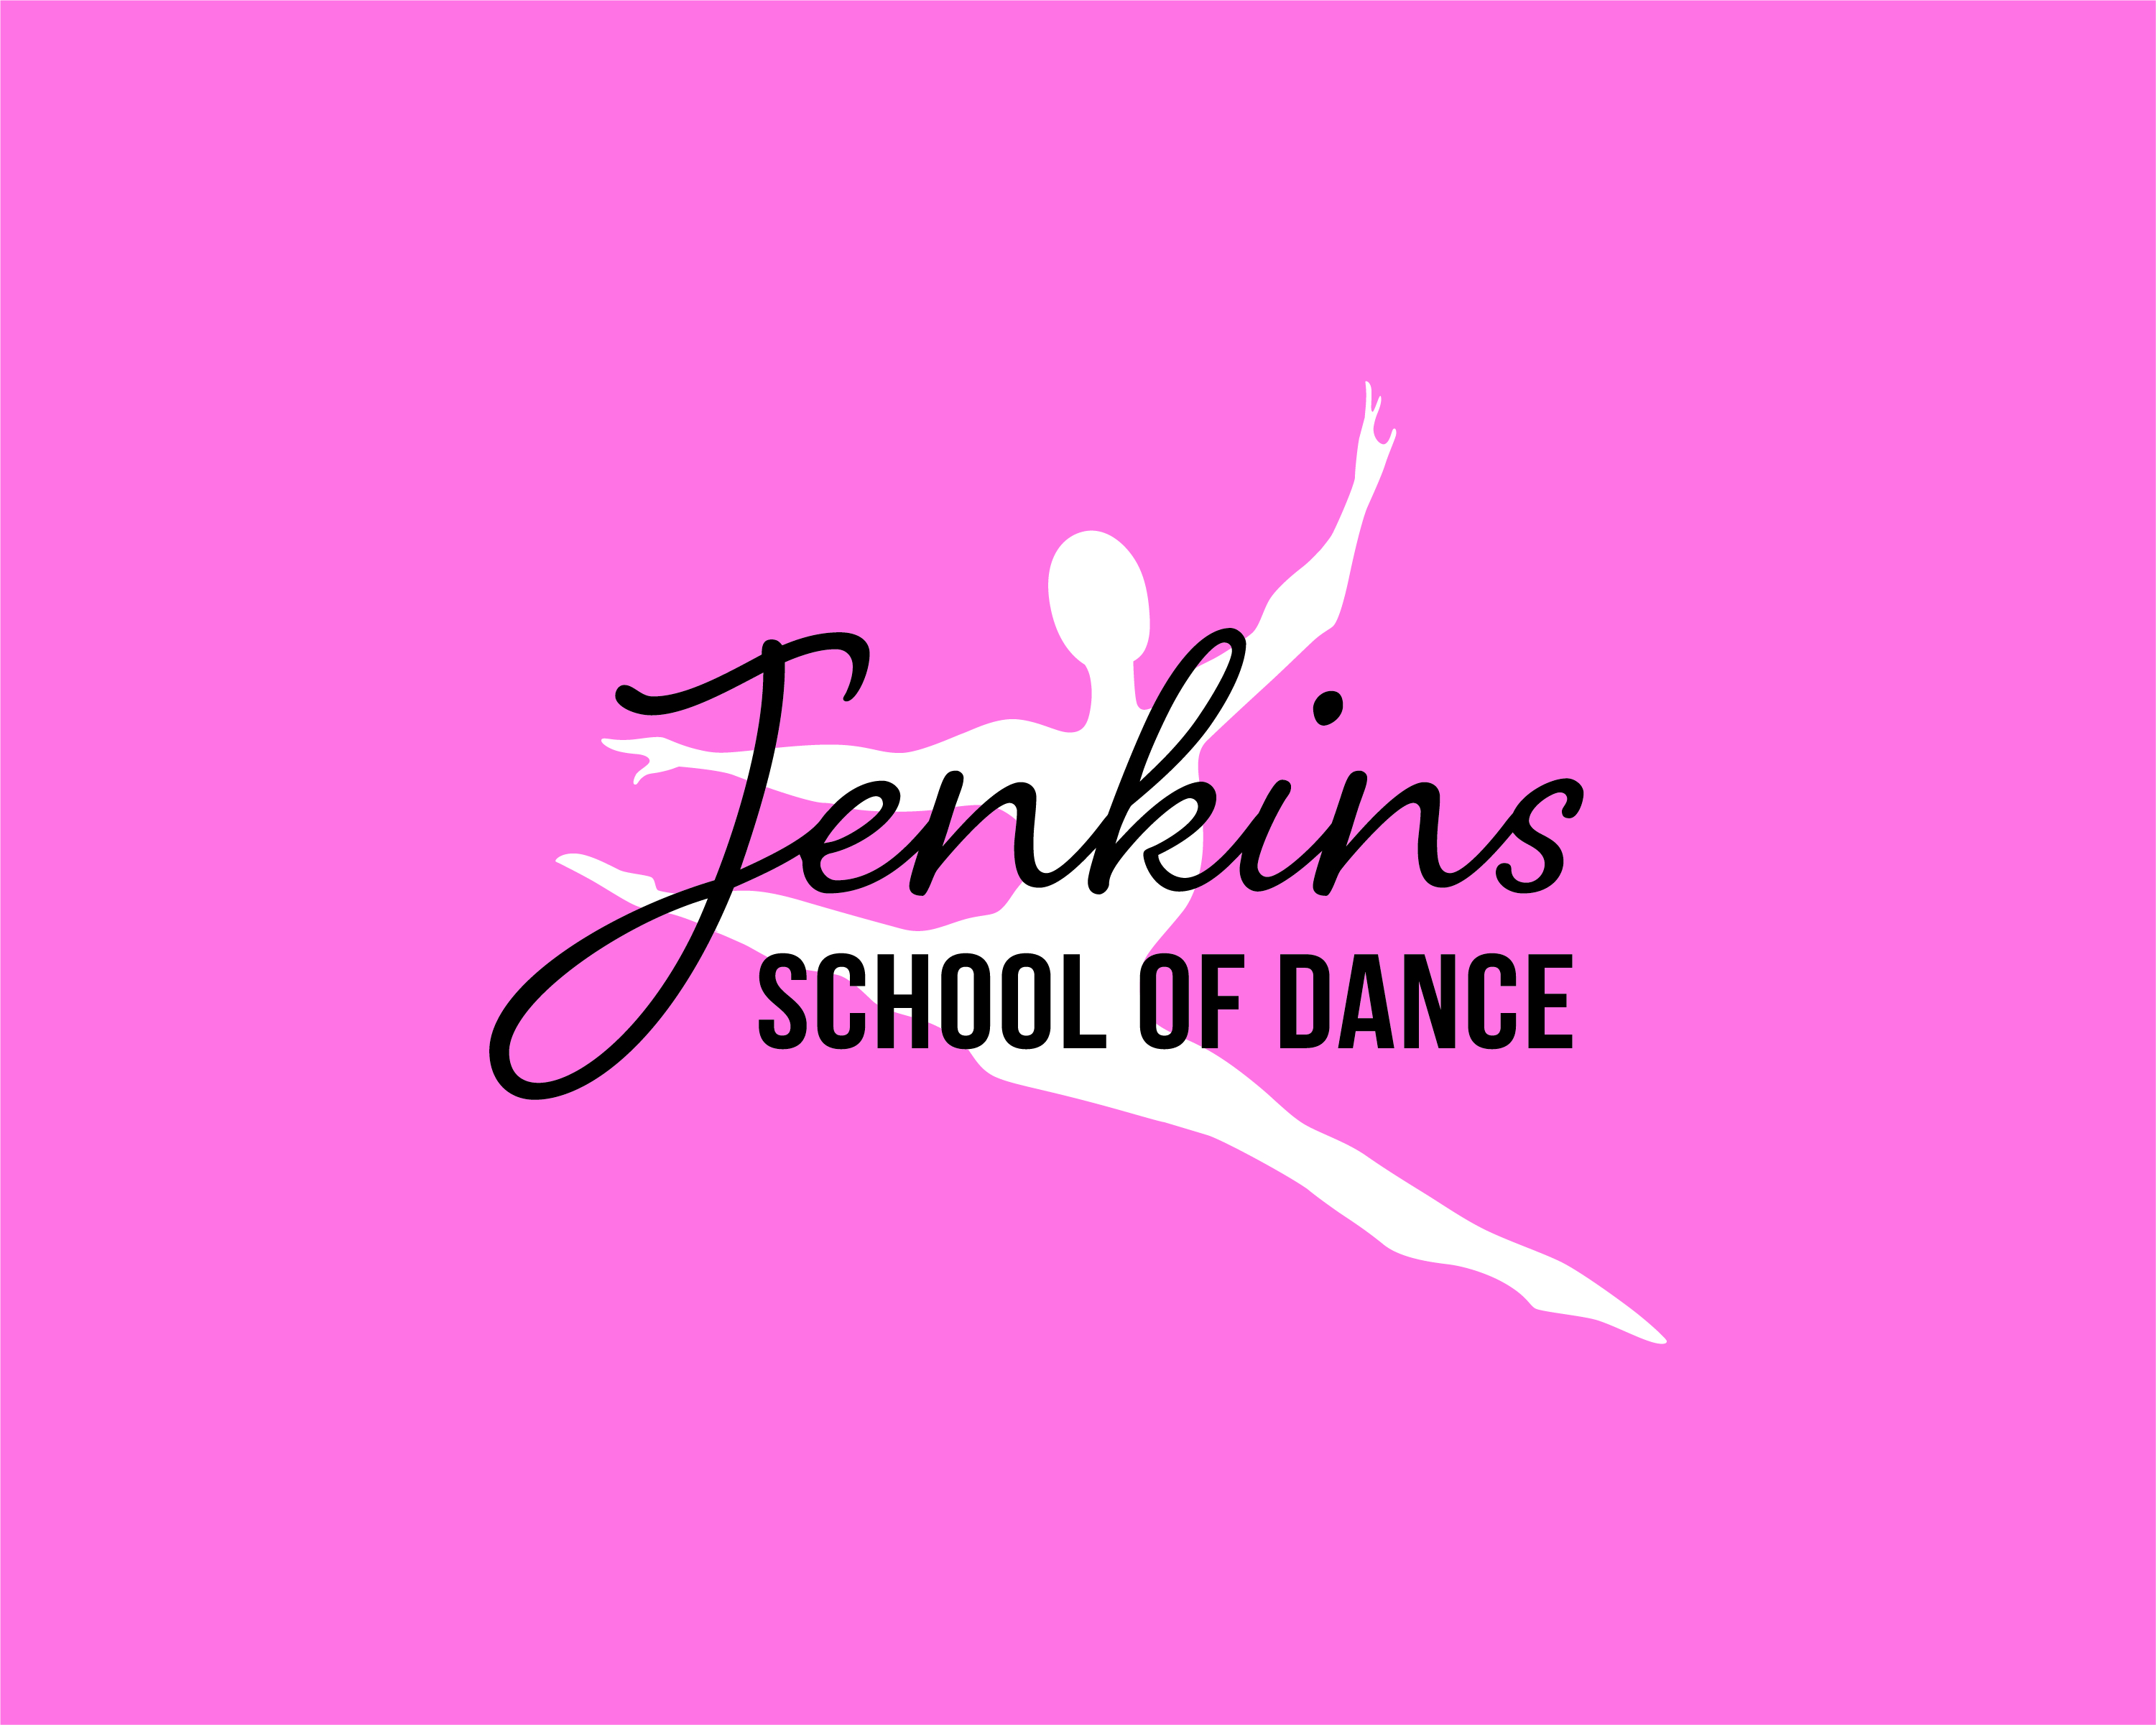 Jenkins School of Dance